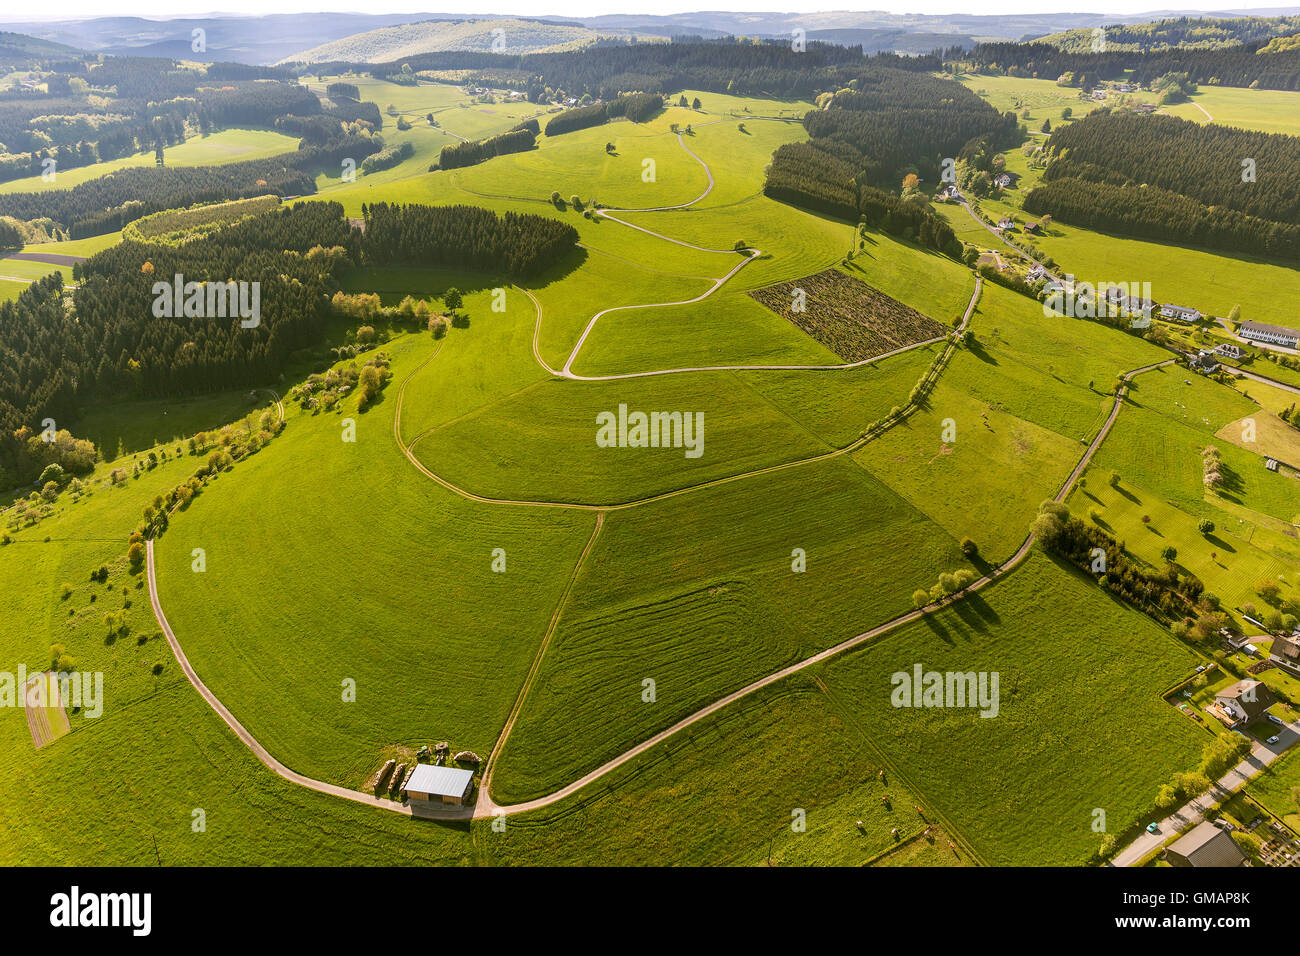 Vista aerea, superfici di Cirillo, colline, percorsi isohypses allineati, Wunderthausen, Bad Berleburg, vista aerea di Wittgenstein, Foto Stock